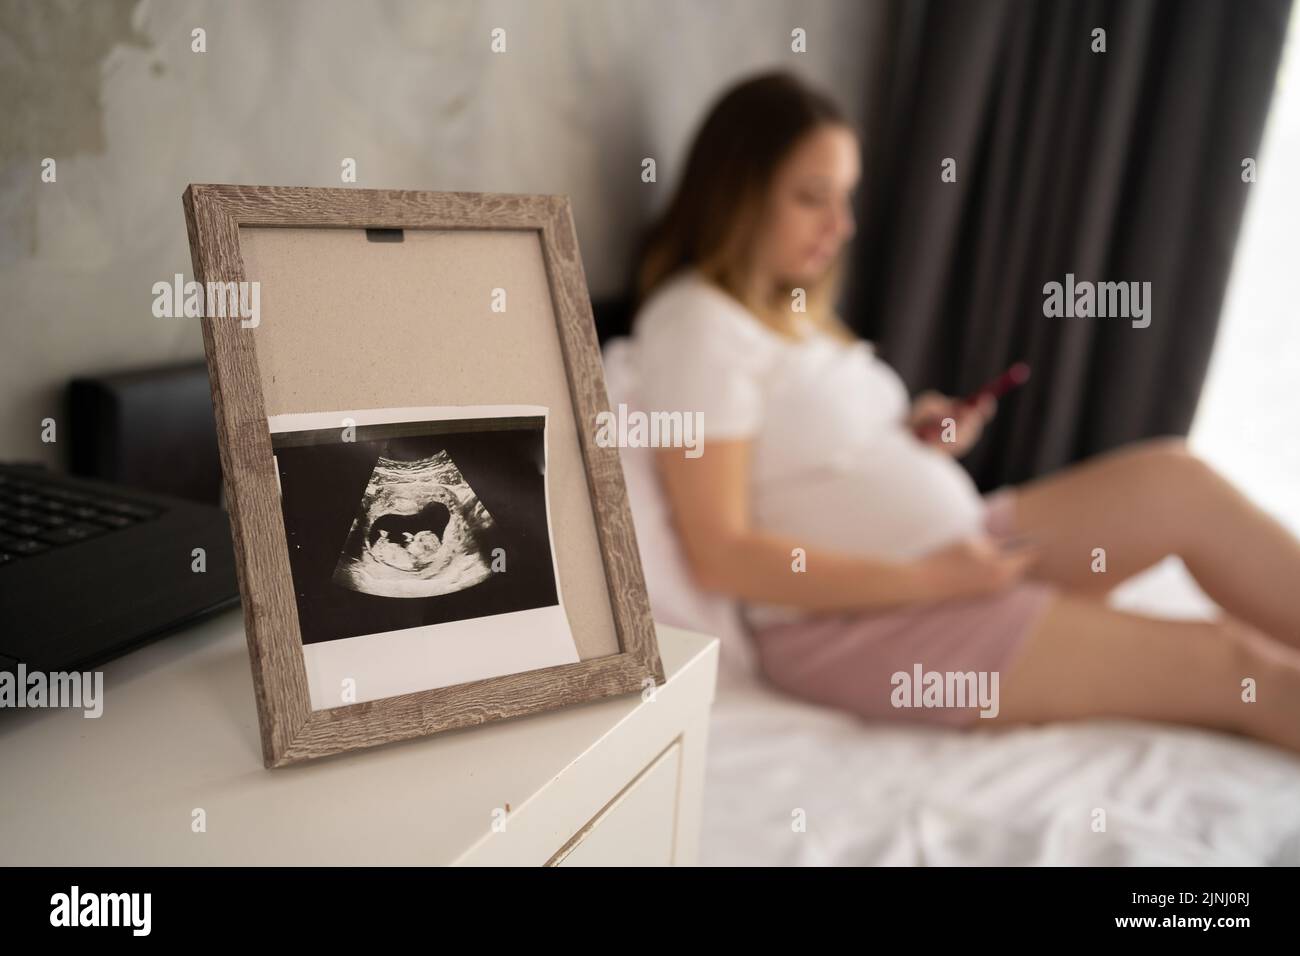 https://c8.alamy.com/compfr/2jnj0rj/echographie-photo-du-foetus-dans-le-cadre-femme-enceinte-au-lit-sur-fond-grossesse-et-echographie-de-controle-concept-2jnj0rj.jpg